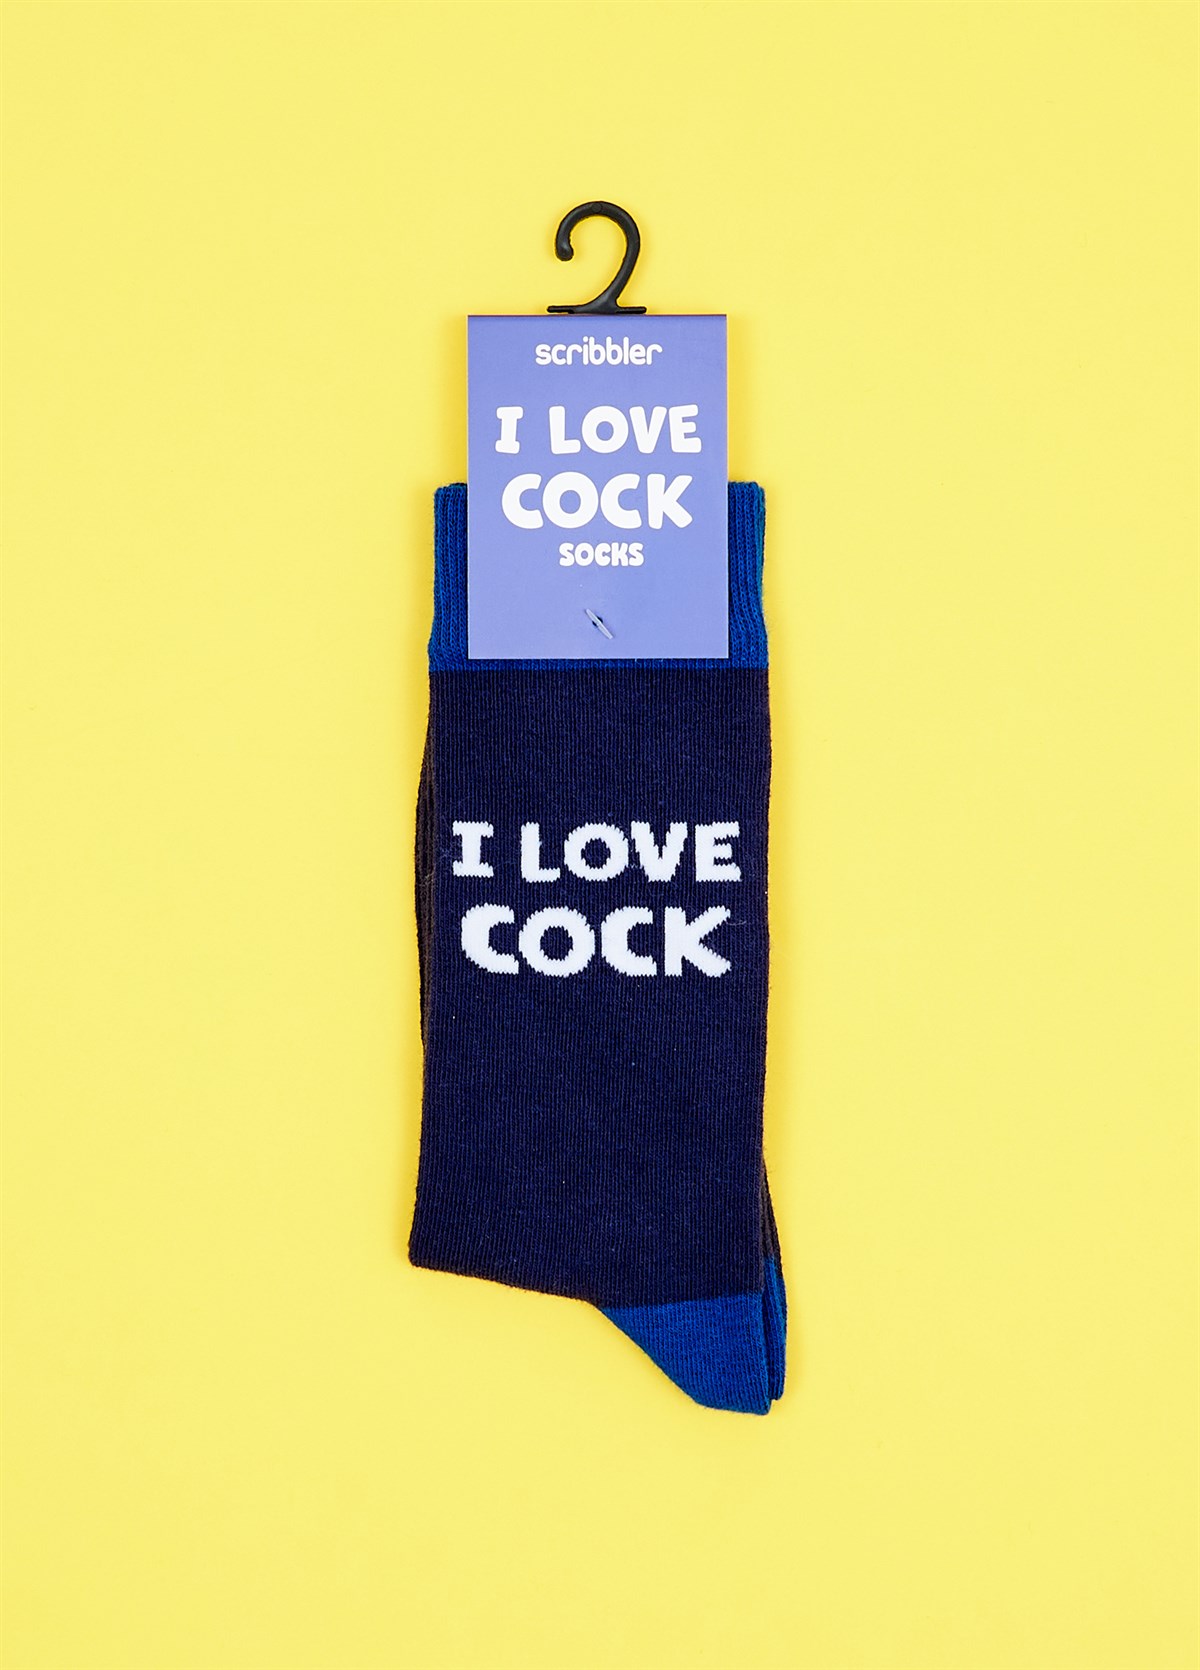 I love cock socks